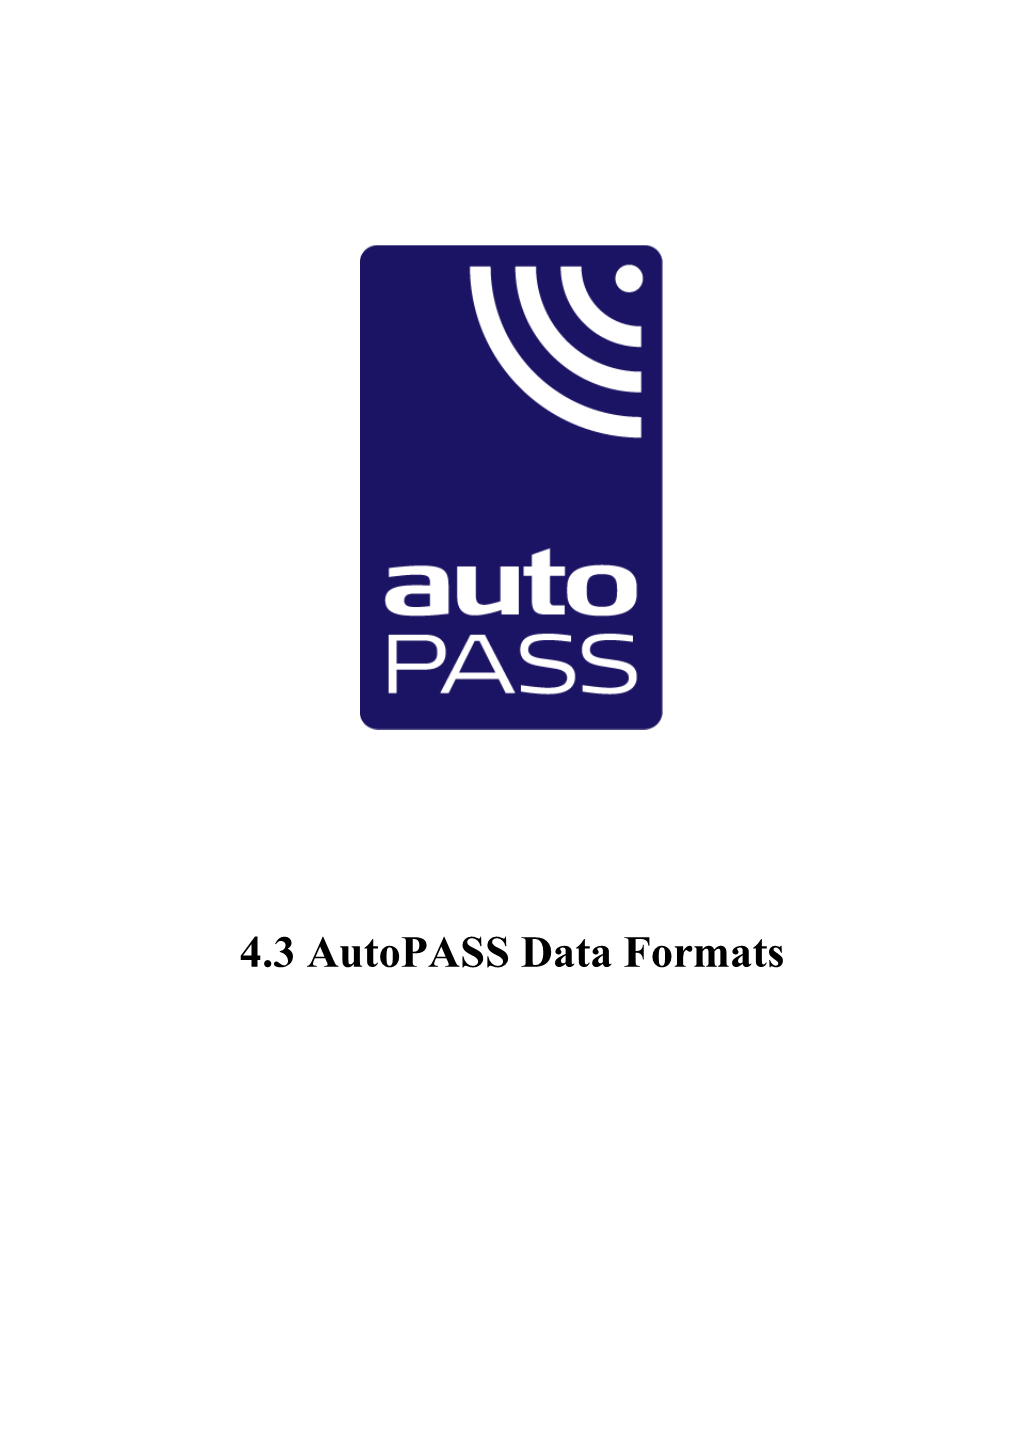 4.3 Autopass Data Formats